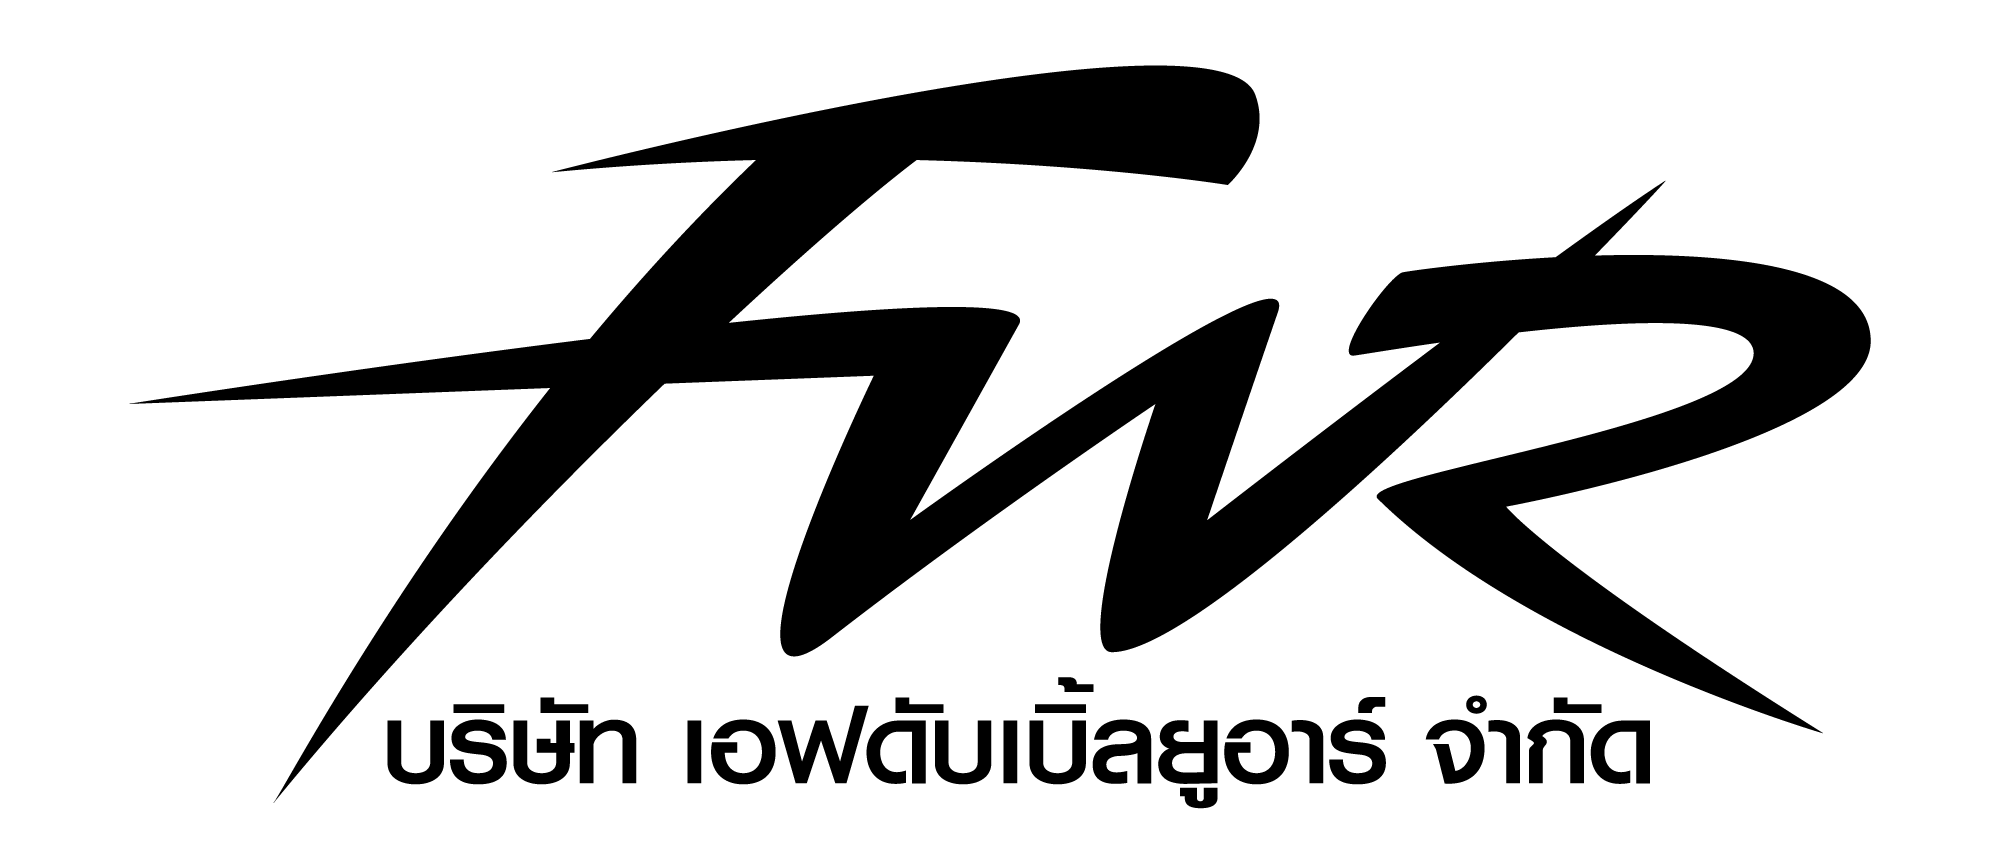 บริษัท เอฟดับเบิ้ลยูอาร์ จำกัด logo โลโก้